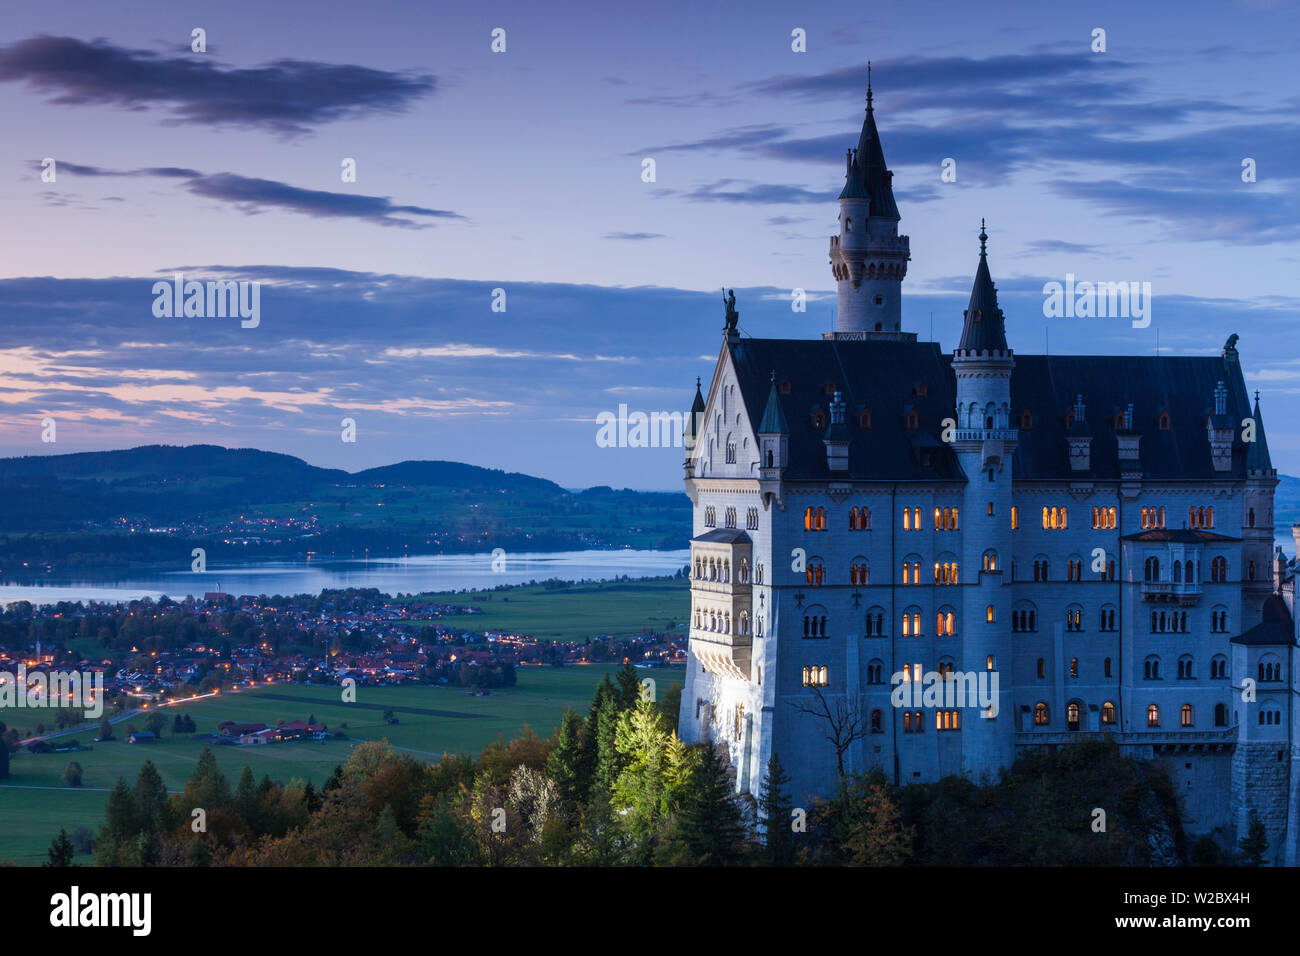 Germany, Bavaria, Schloss Hohenschwangau, château de Neuschwanstein, Marienbrucke bridge view, dusk Banque D'Images